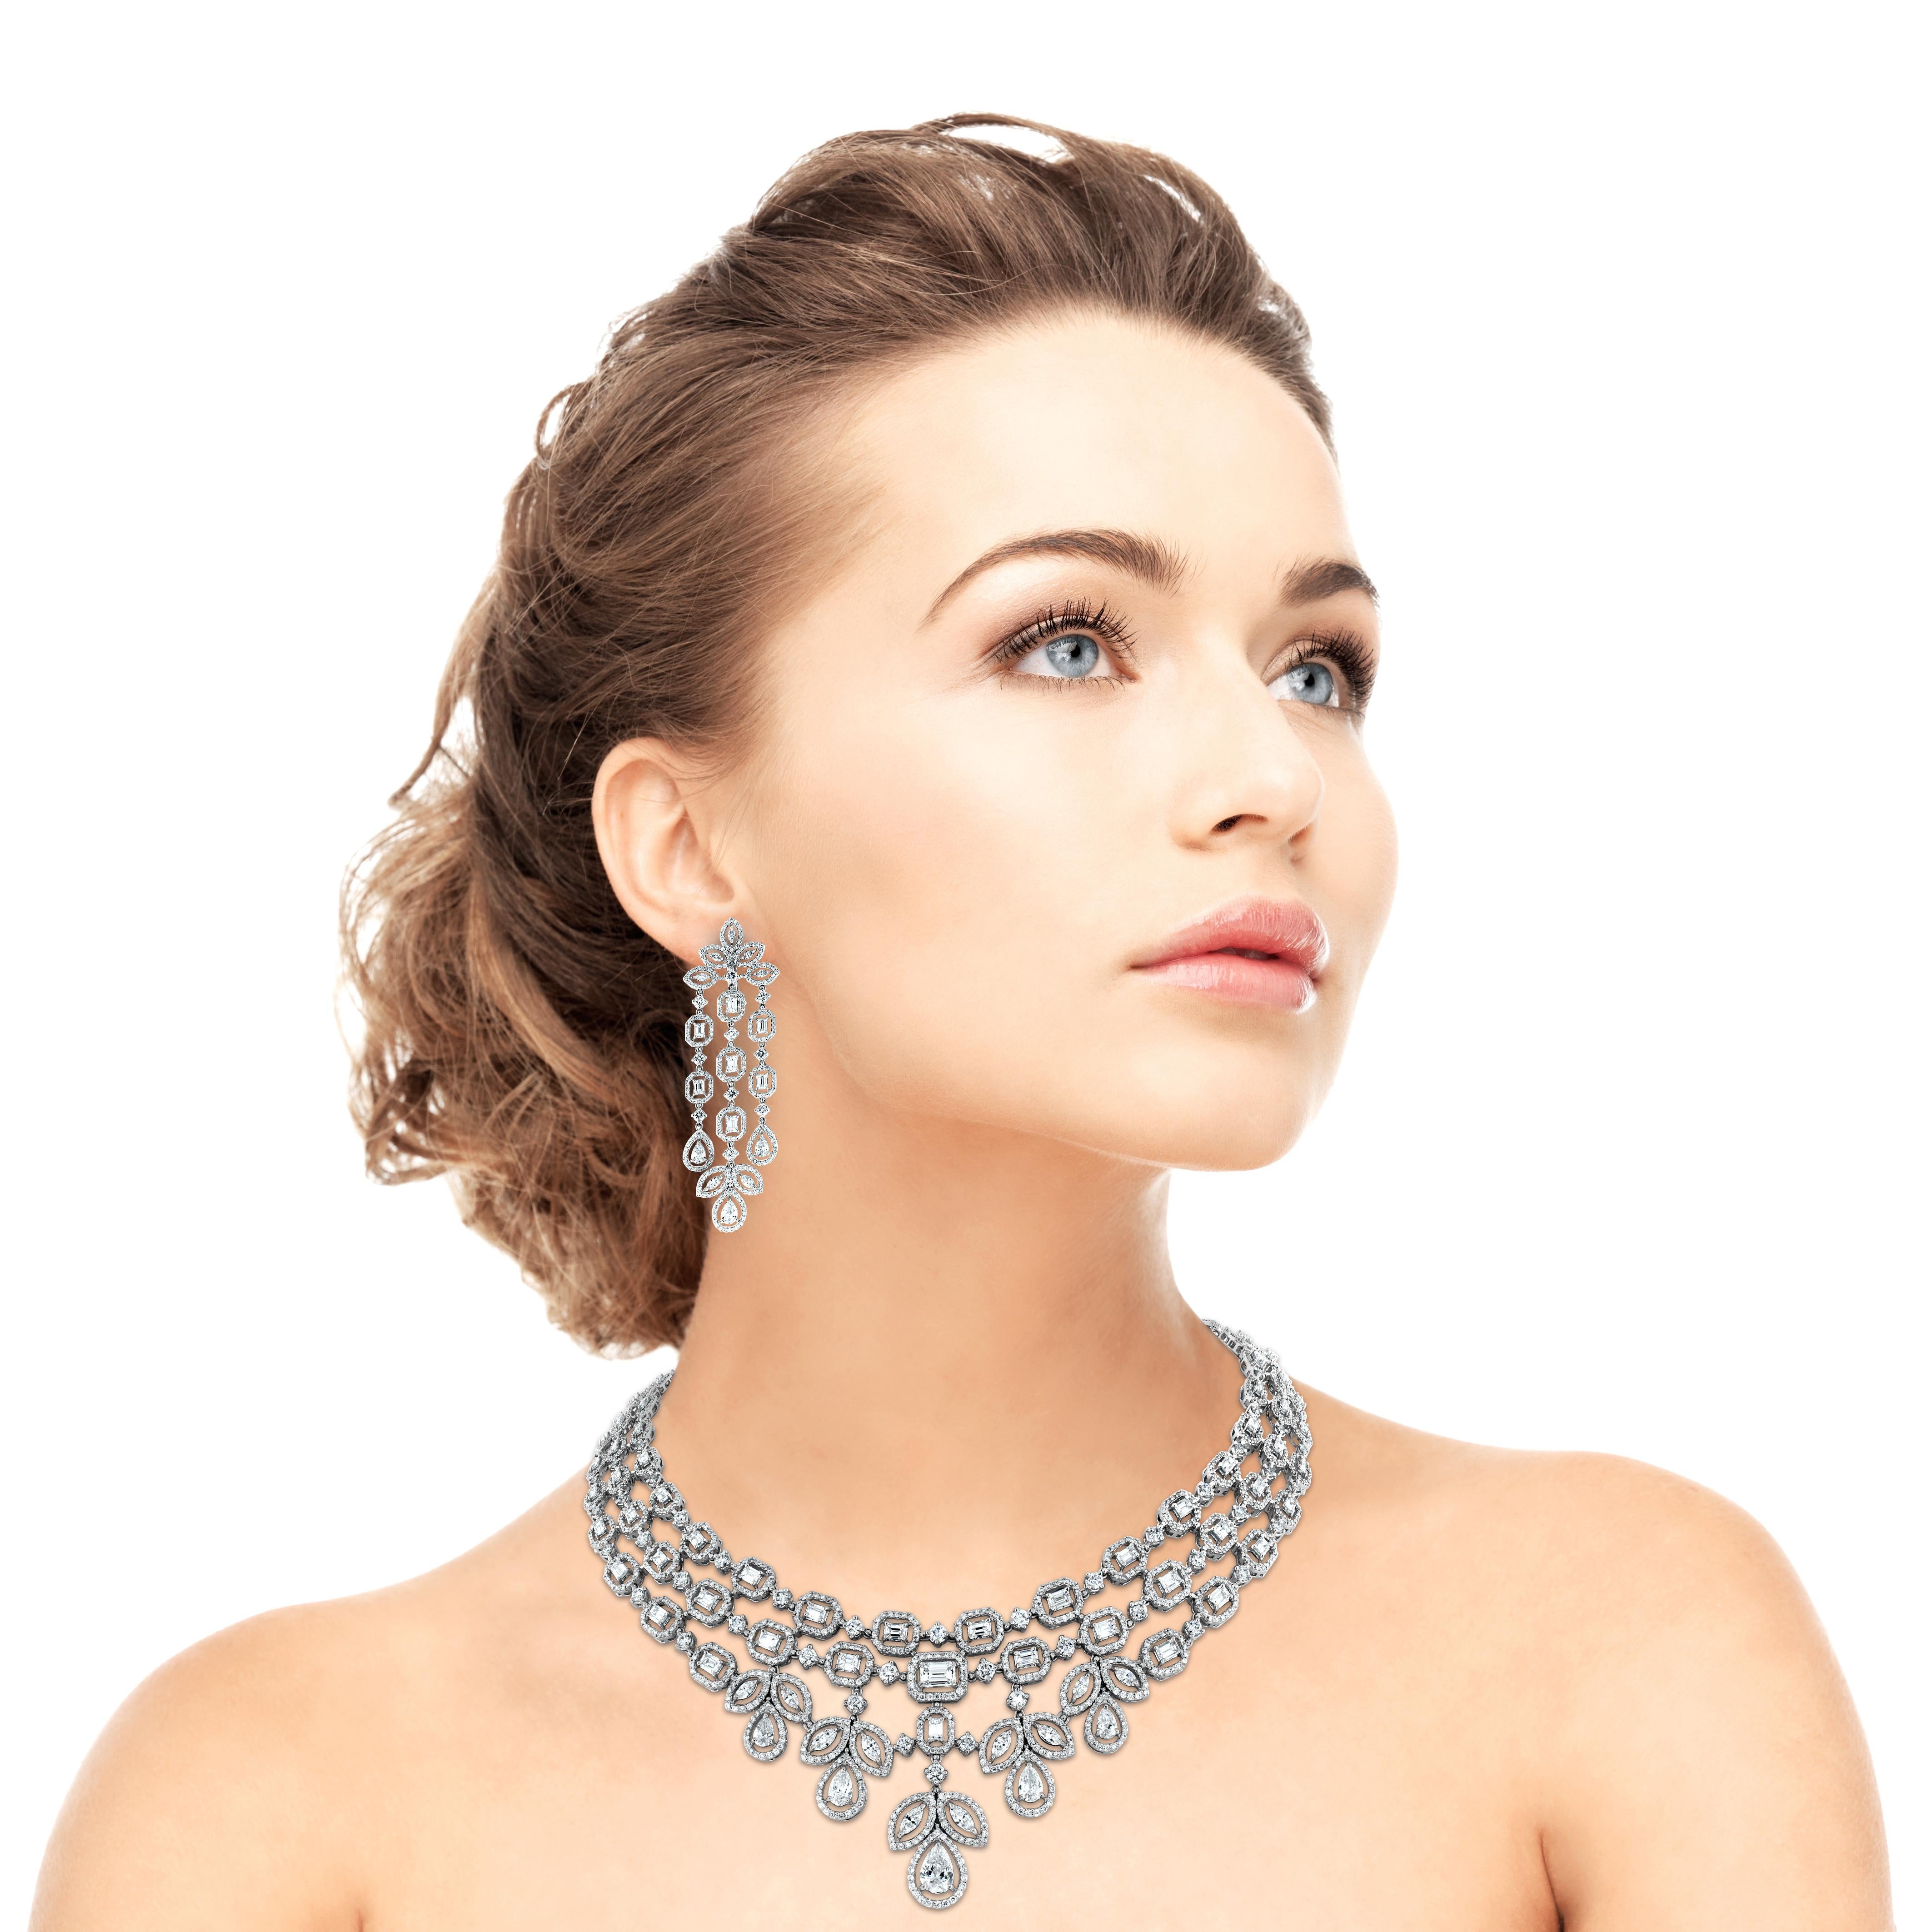 Die Beauvince Legacy Diamant-Halskette & Ohrringe Suite verfügt über ein wichtiges und nachdrückliches Design, das einer Königin angemessen ist. Es ist angegeben, königlich und elegant. Die überdimensionalen Kronleuchter-Ohrringe betonen die